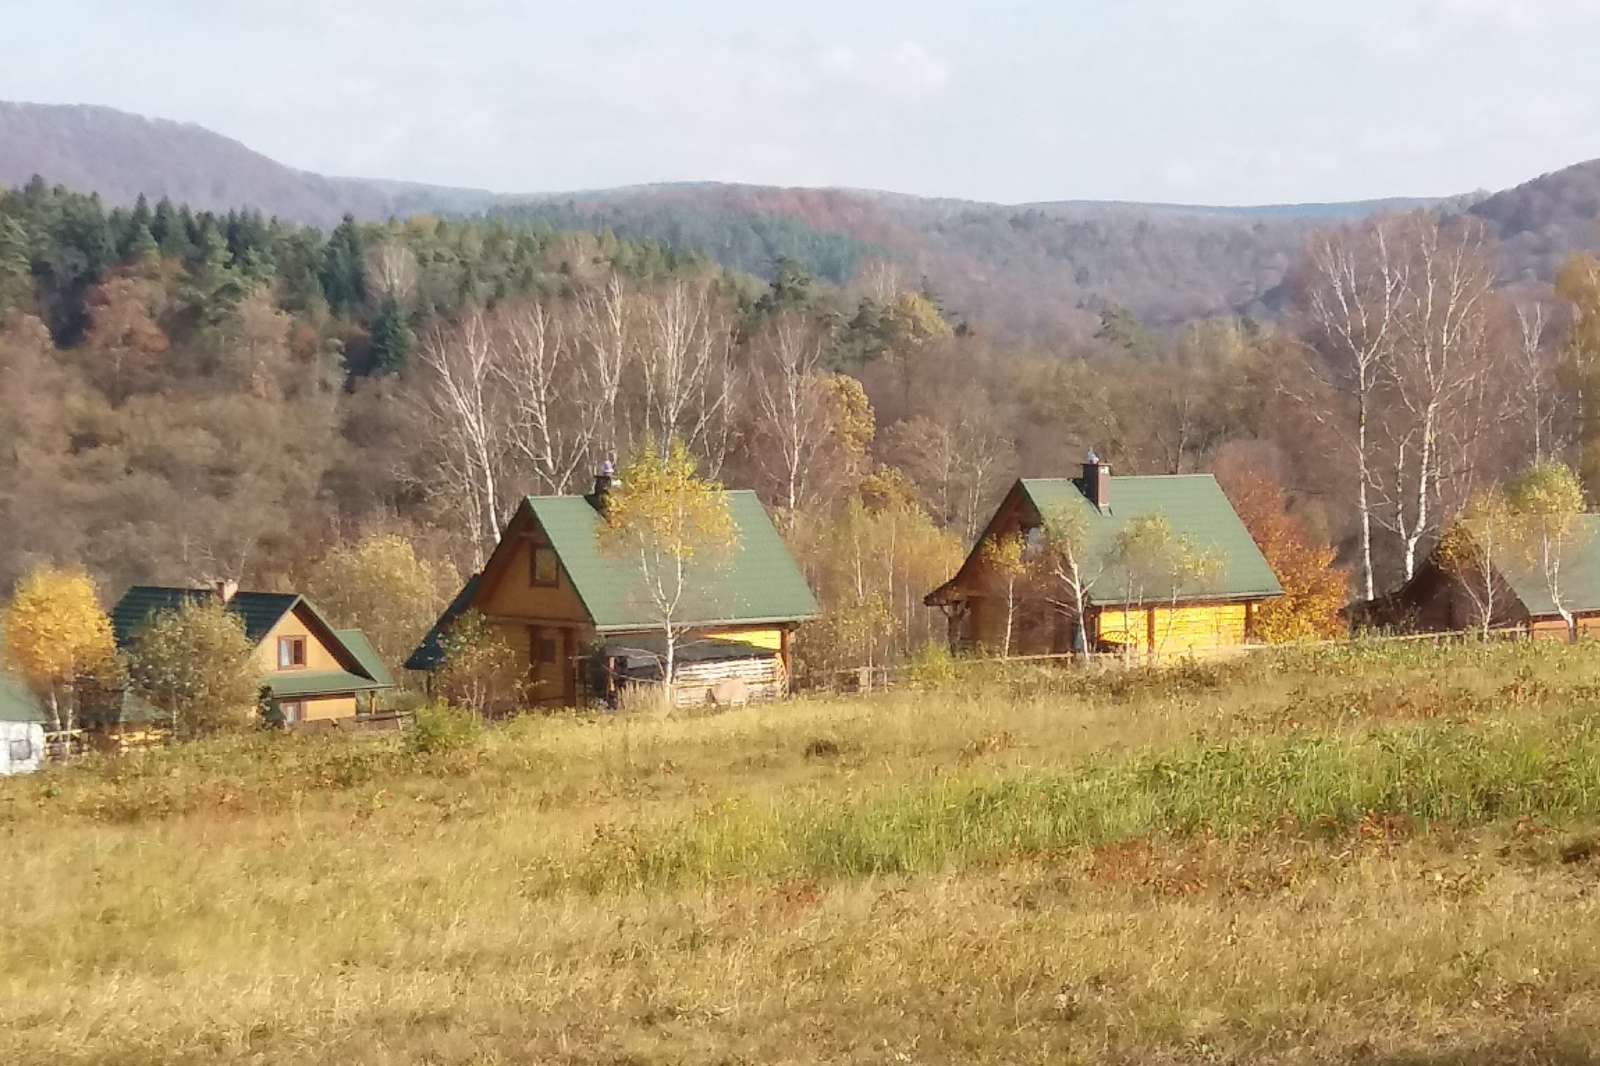 Herfst in de Bieszczady-bergen. legpuzzel online